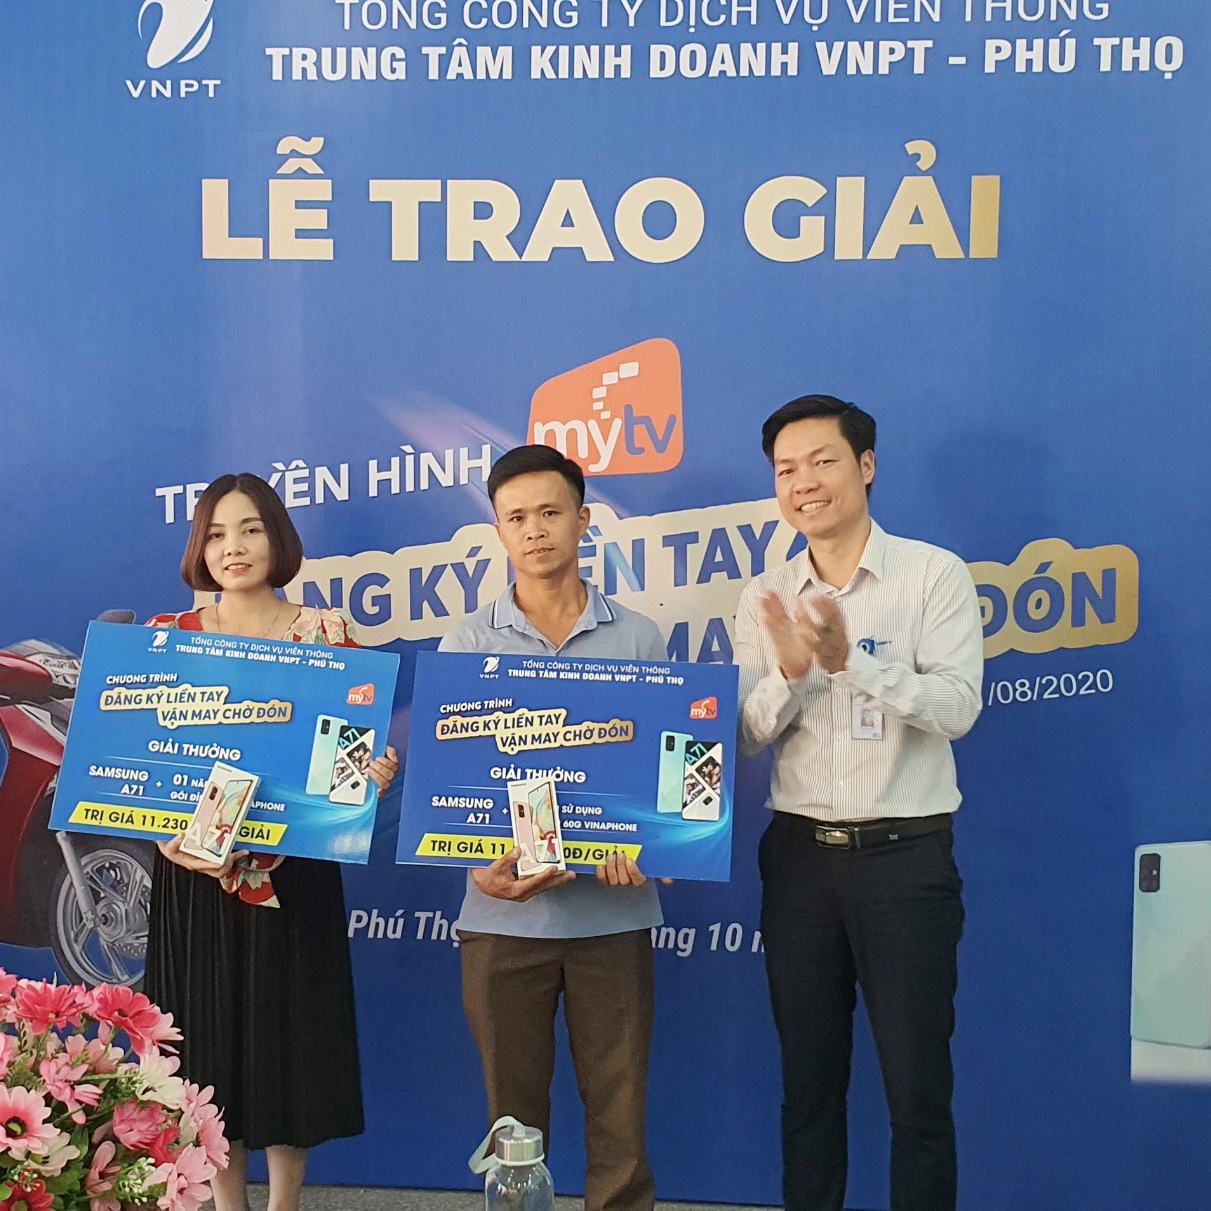 VNPT- VinaPhone Phú Thọ tổ chức trao thưởng cho khách hàng may mắn trong chương trình "TRUYỀN HÌNH MY TV – ĐĂNG KÝ LIỀN TAY VẬN MAY CHỜ ĐÓN "